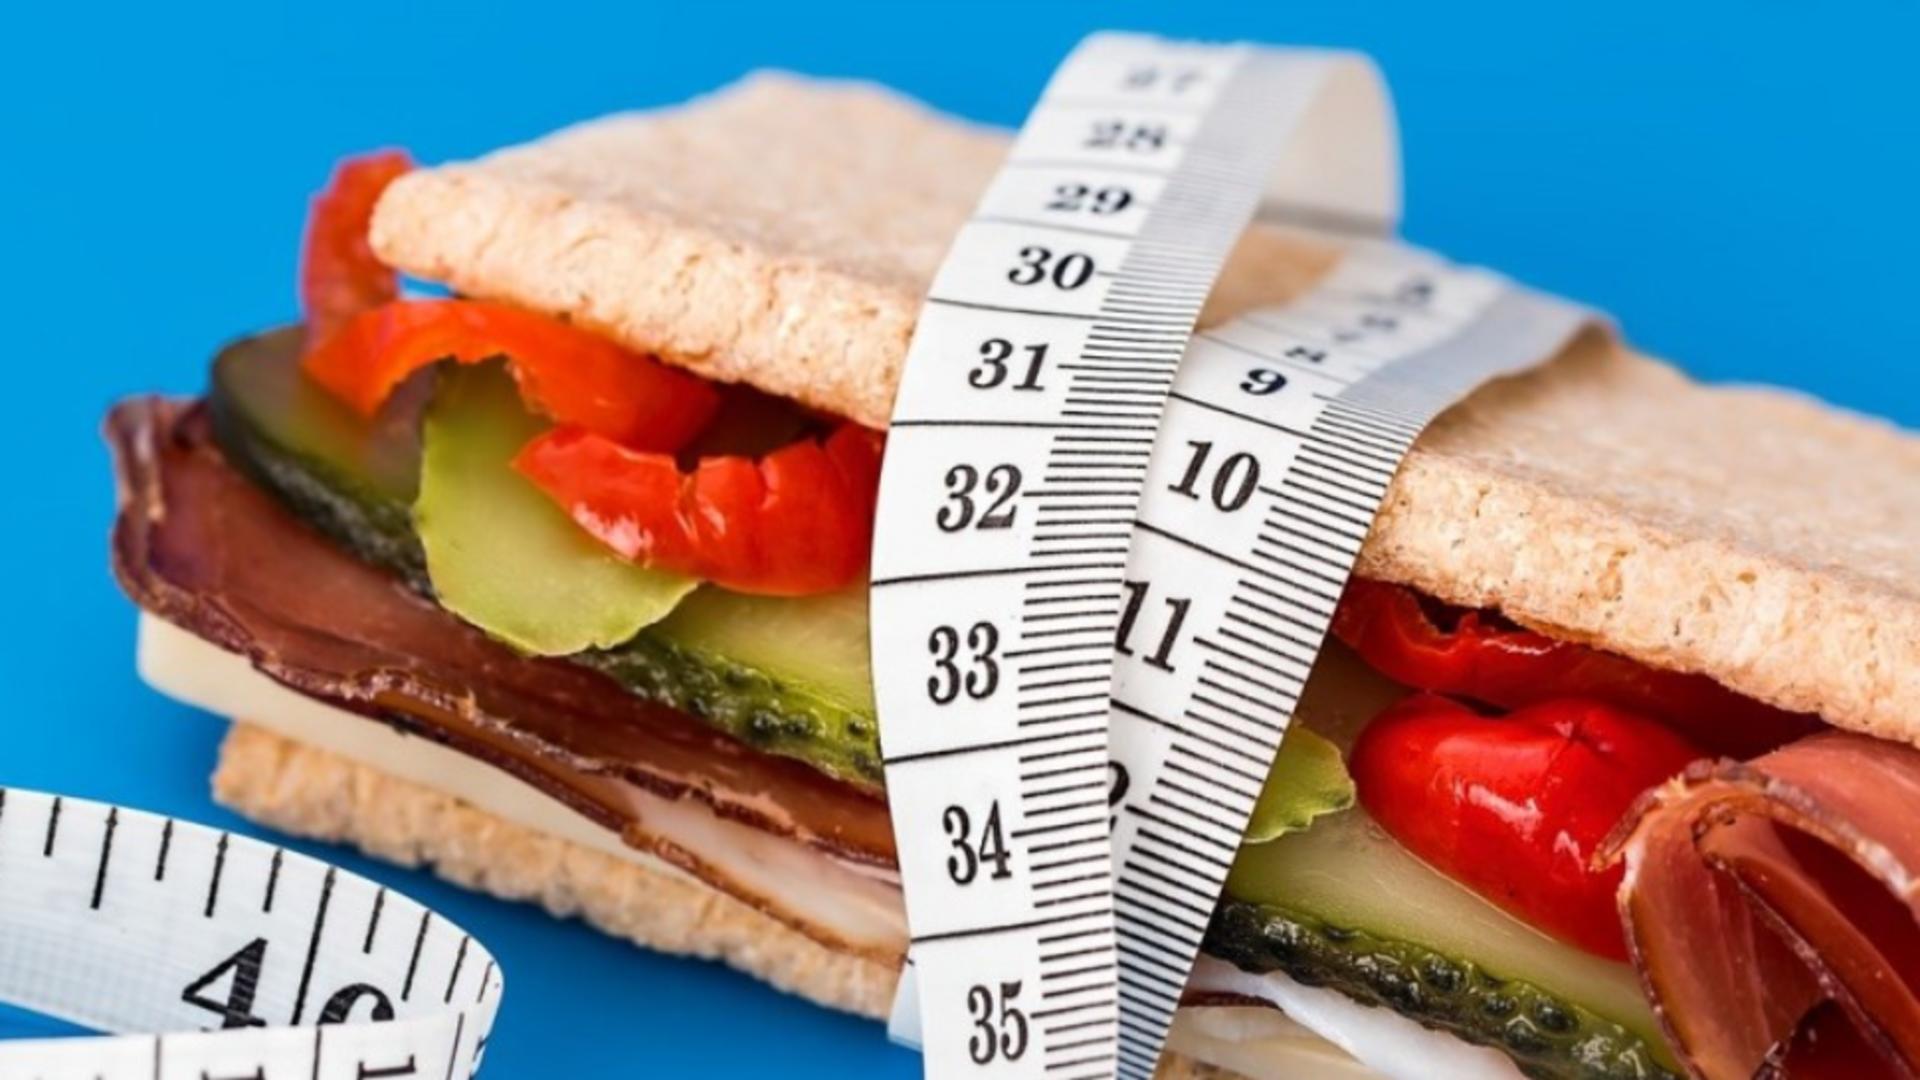 Ce urmează după sărbătorile de iarnă: Top 3 diete ideale pentru scăderea în greutate - Care e cea mai sănătoasă